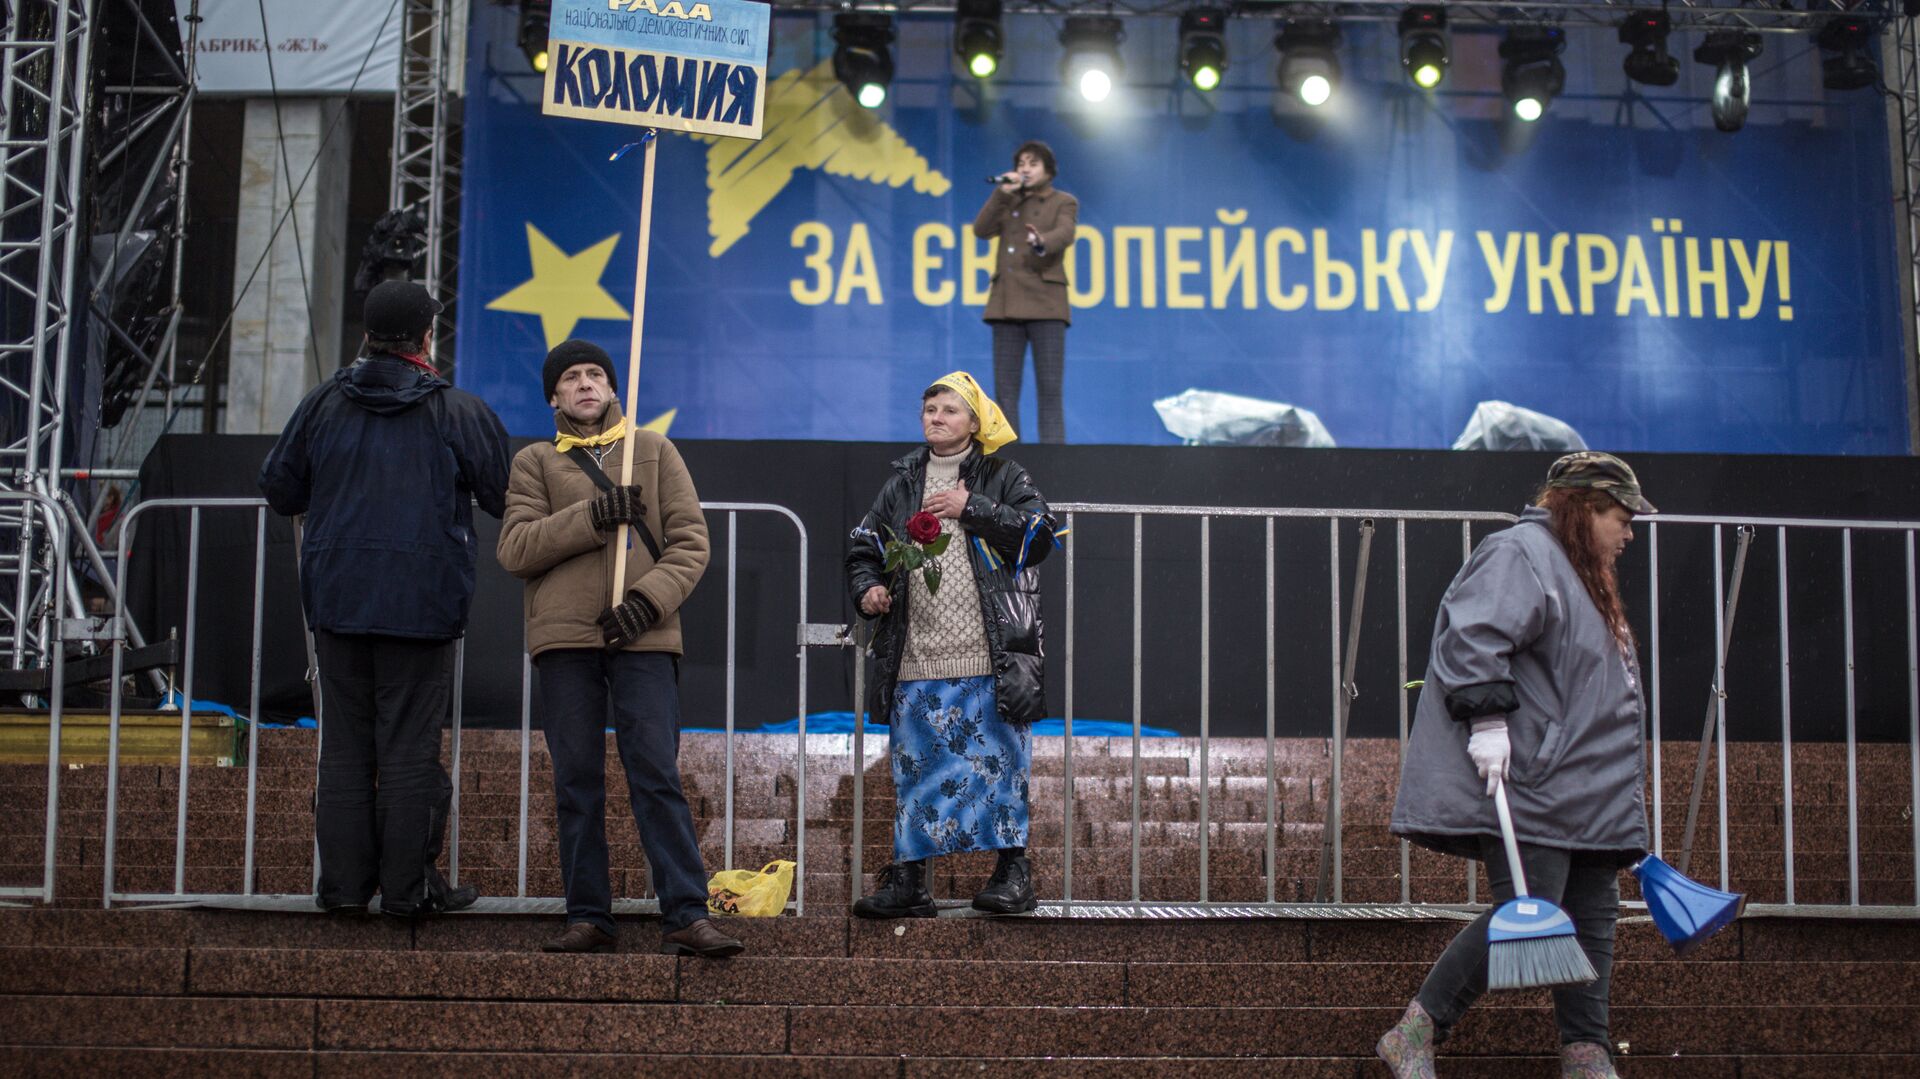 Сторонники евроинтеграции Украины около сцены на Европейской площади в Киеве. 25 января 2013 - РИА Новости, 1920, 25.03.2021